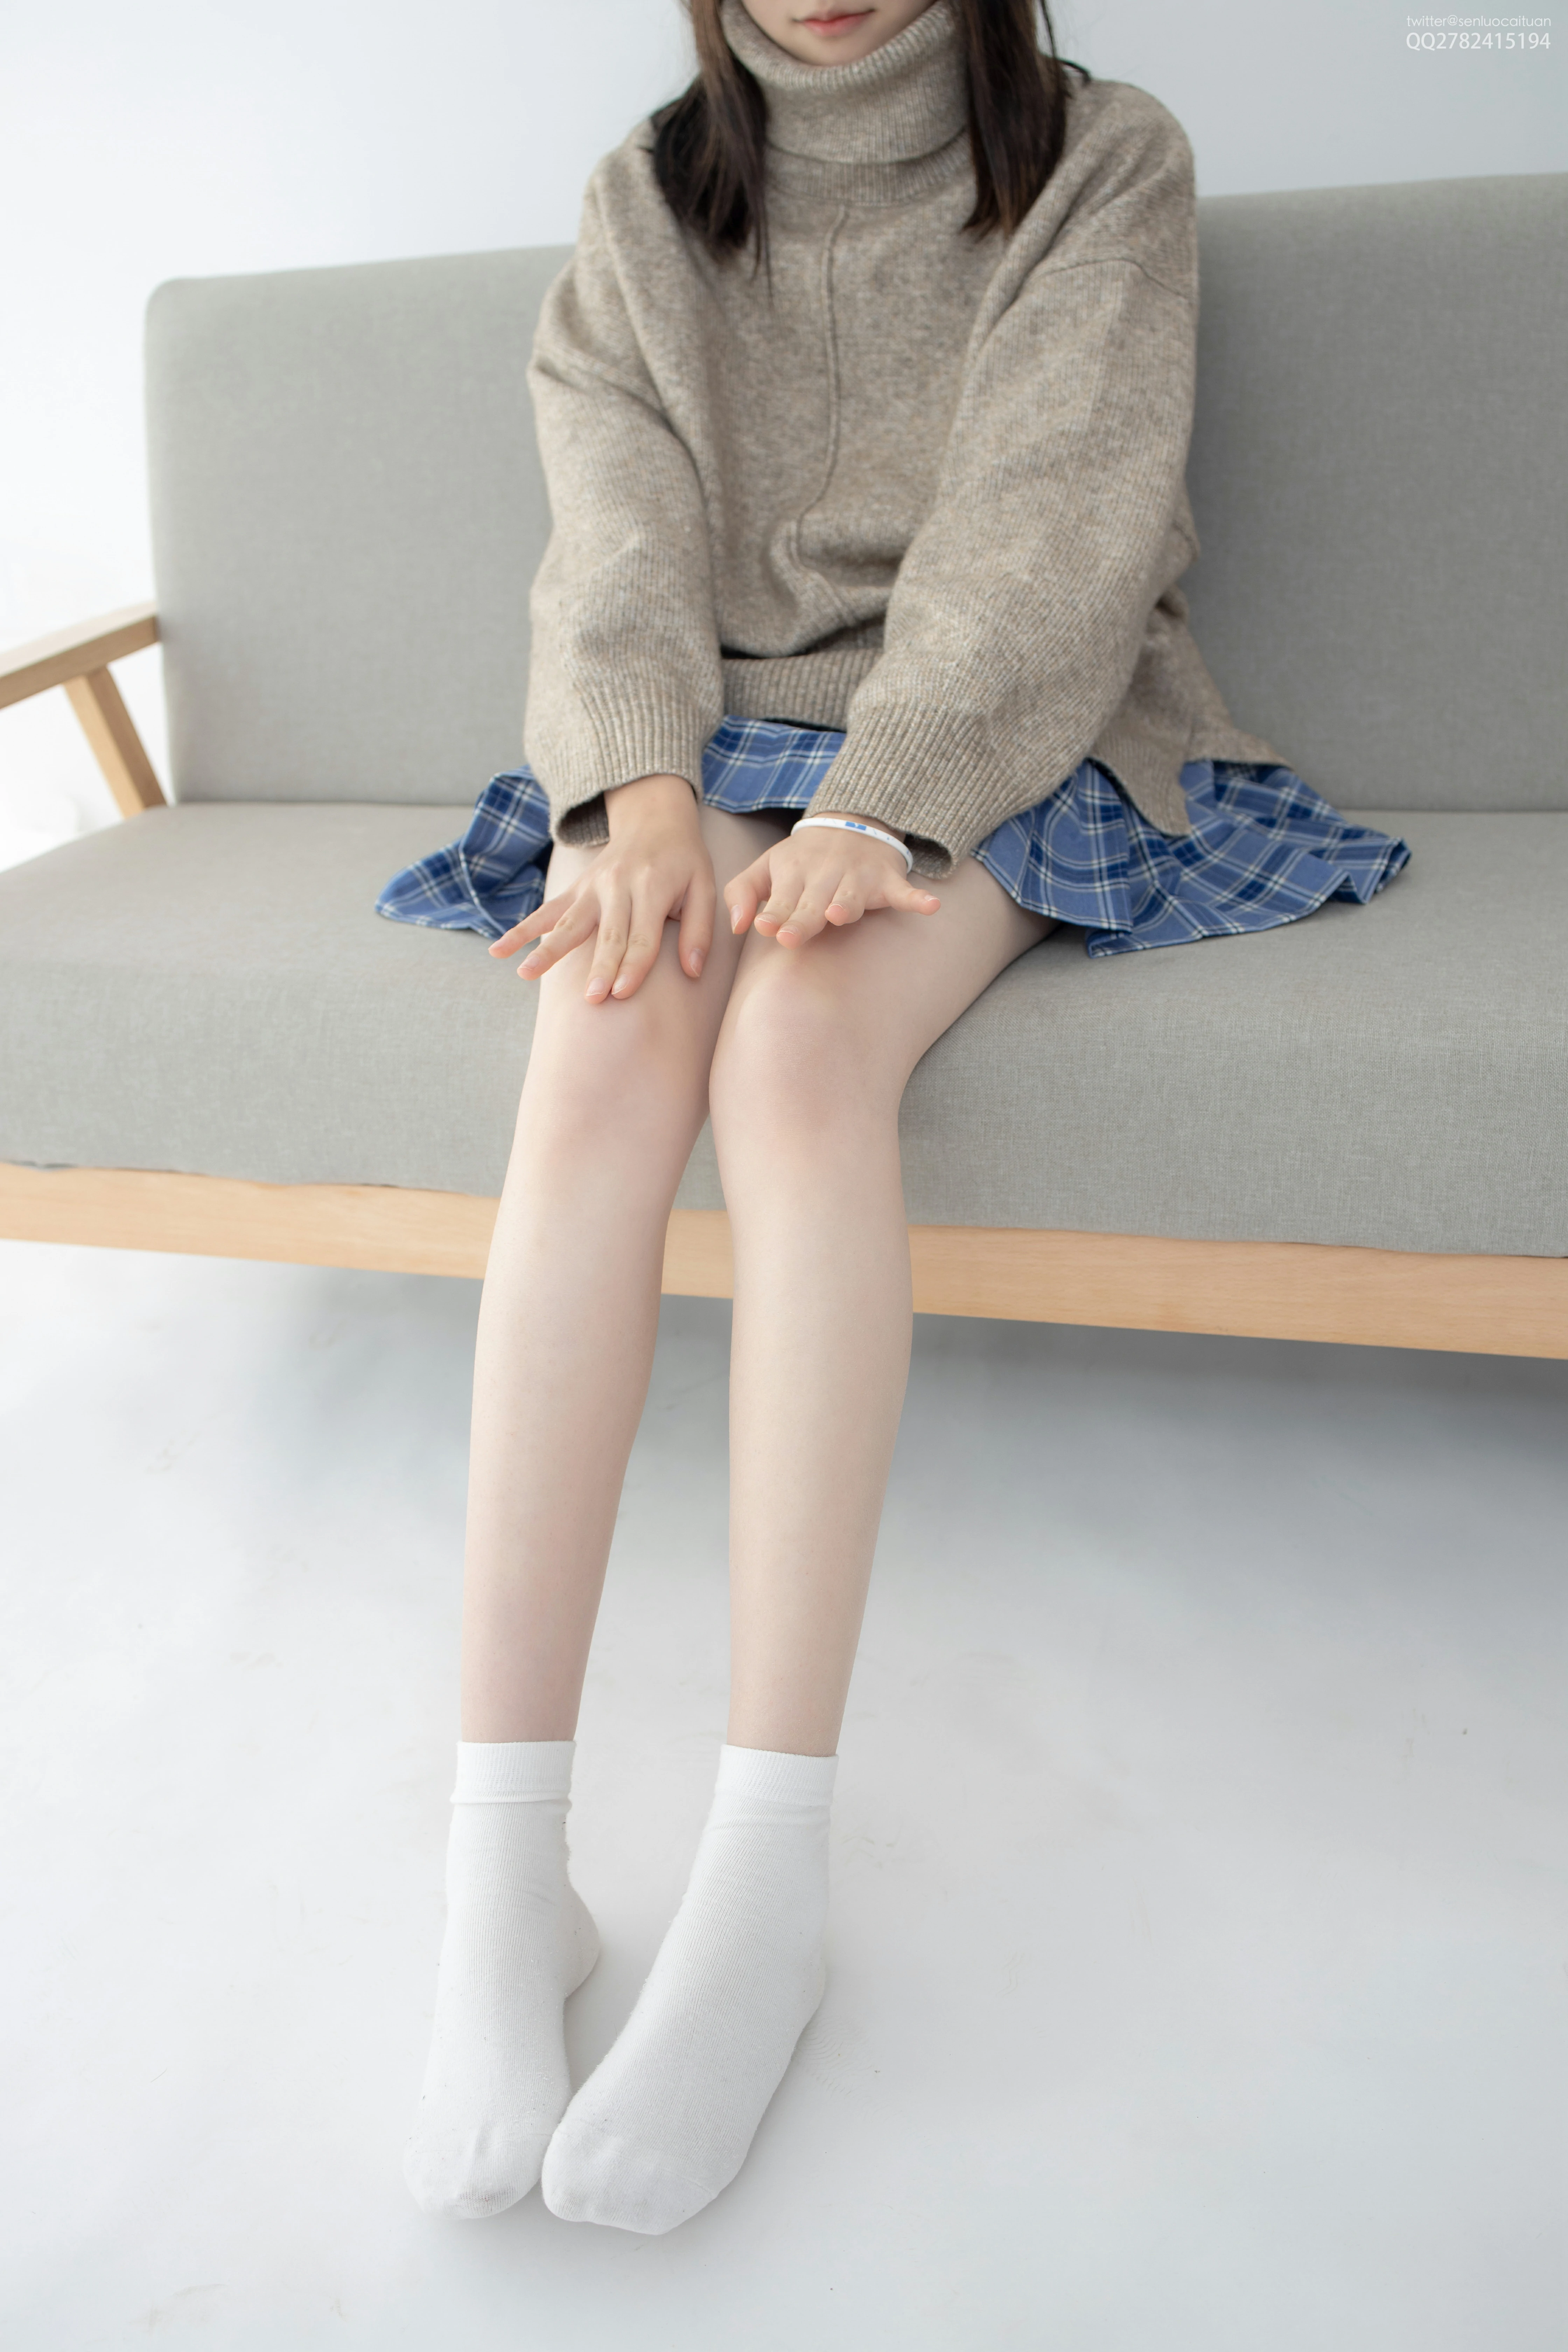 [森萝财团]JKFUN-百元系列1-3 Aika 灰色毛衣加蓝色格子短裙性感私房写真集,